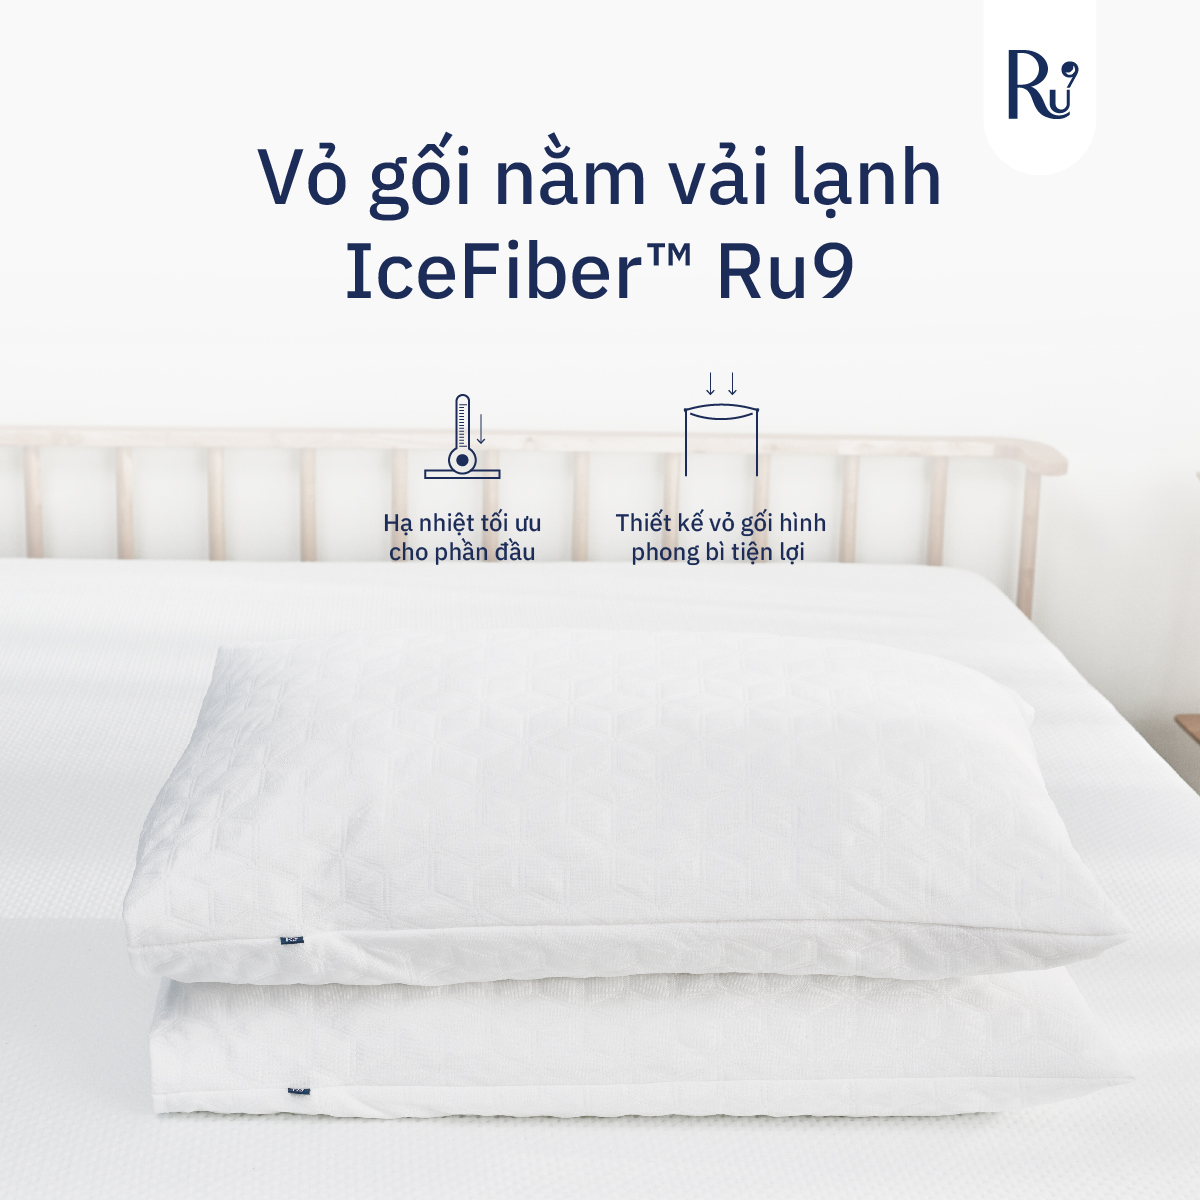 Bộ 2 Vỏ Gối Nằm Vải Lạnh IceFiber™ Ru9 - Hỗ Trợ Giấc Ngủ Mát Mẻ và Thoải Mái | Kích Thước: 50 x 70 cm